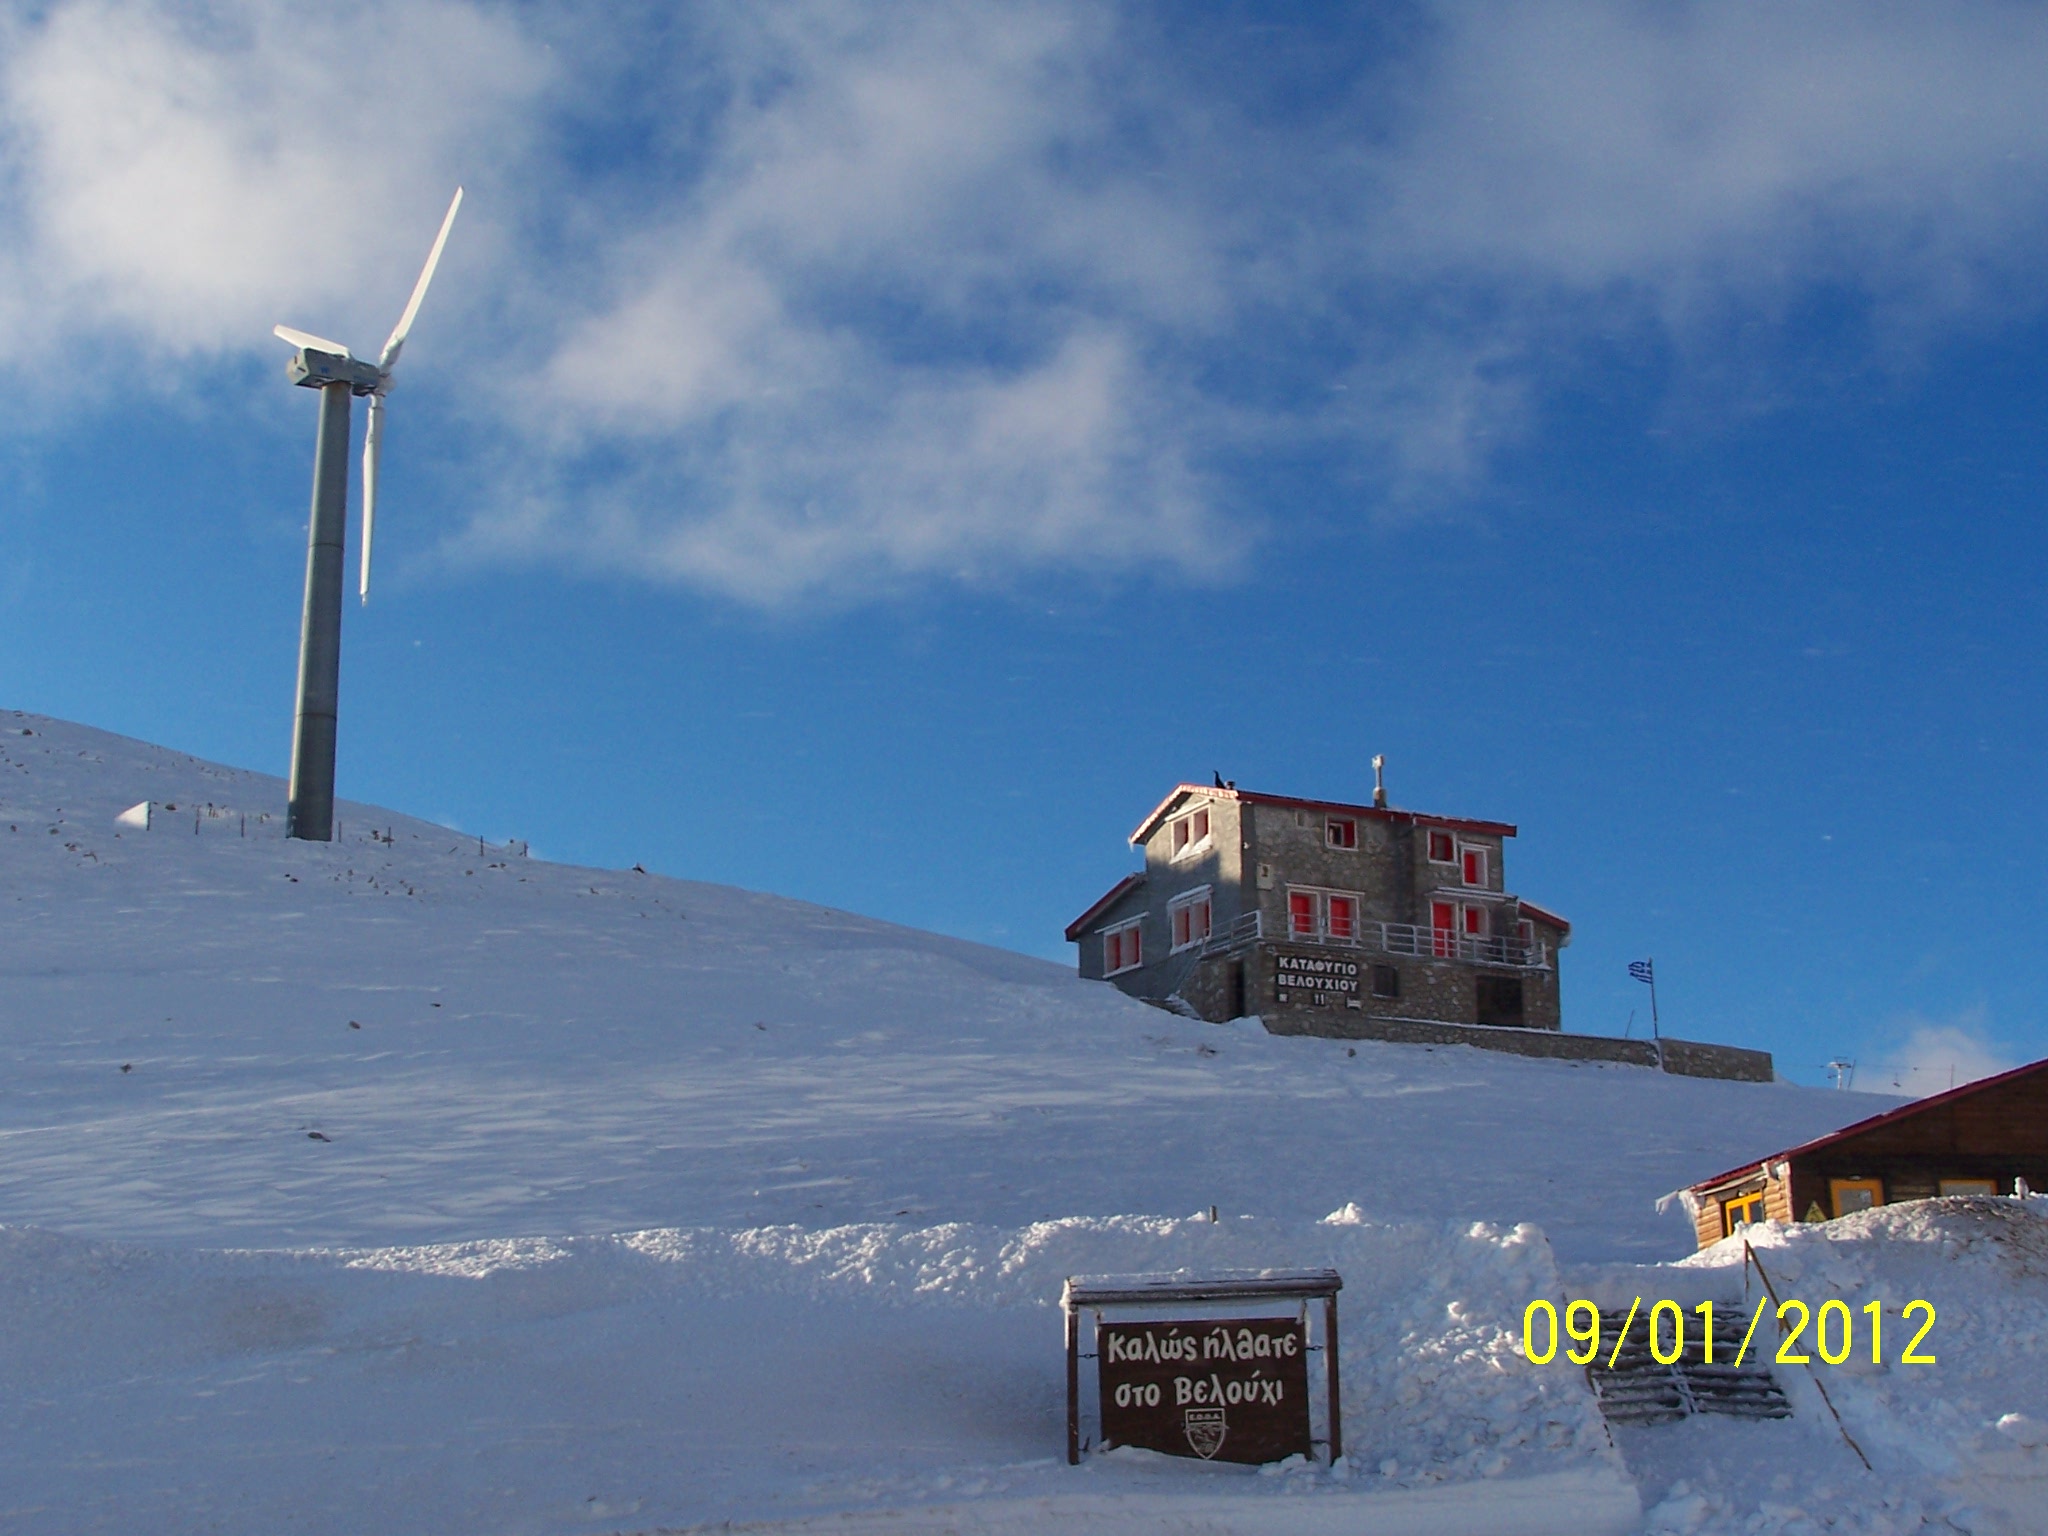 Timfristos mountain - Karpenisi Ski Centre